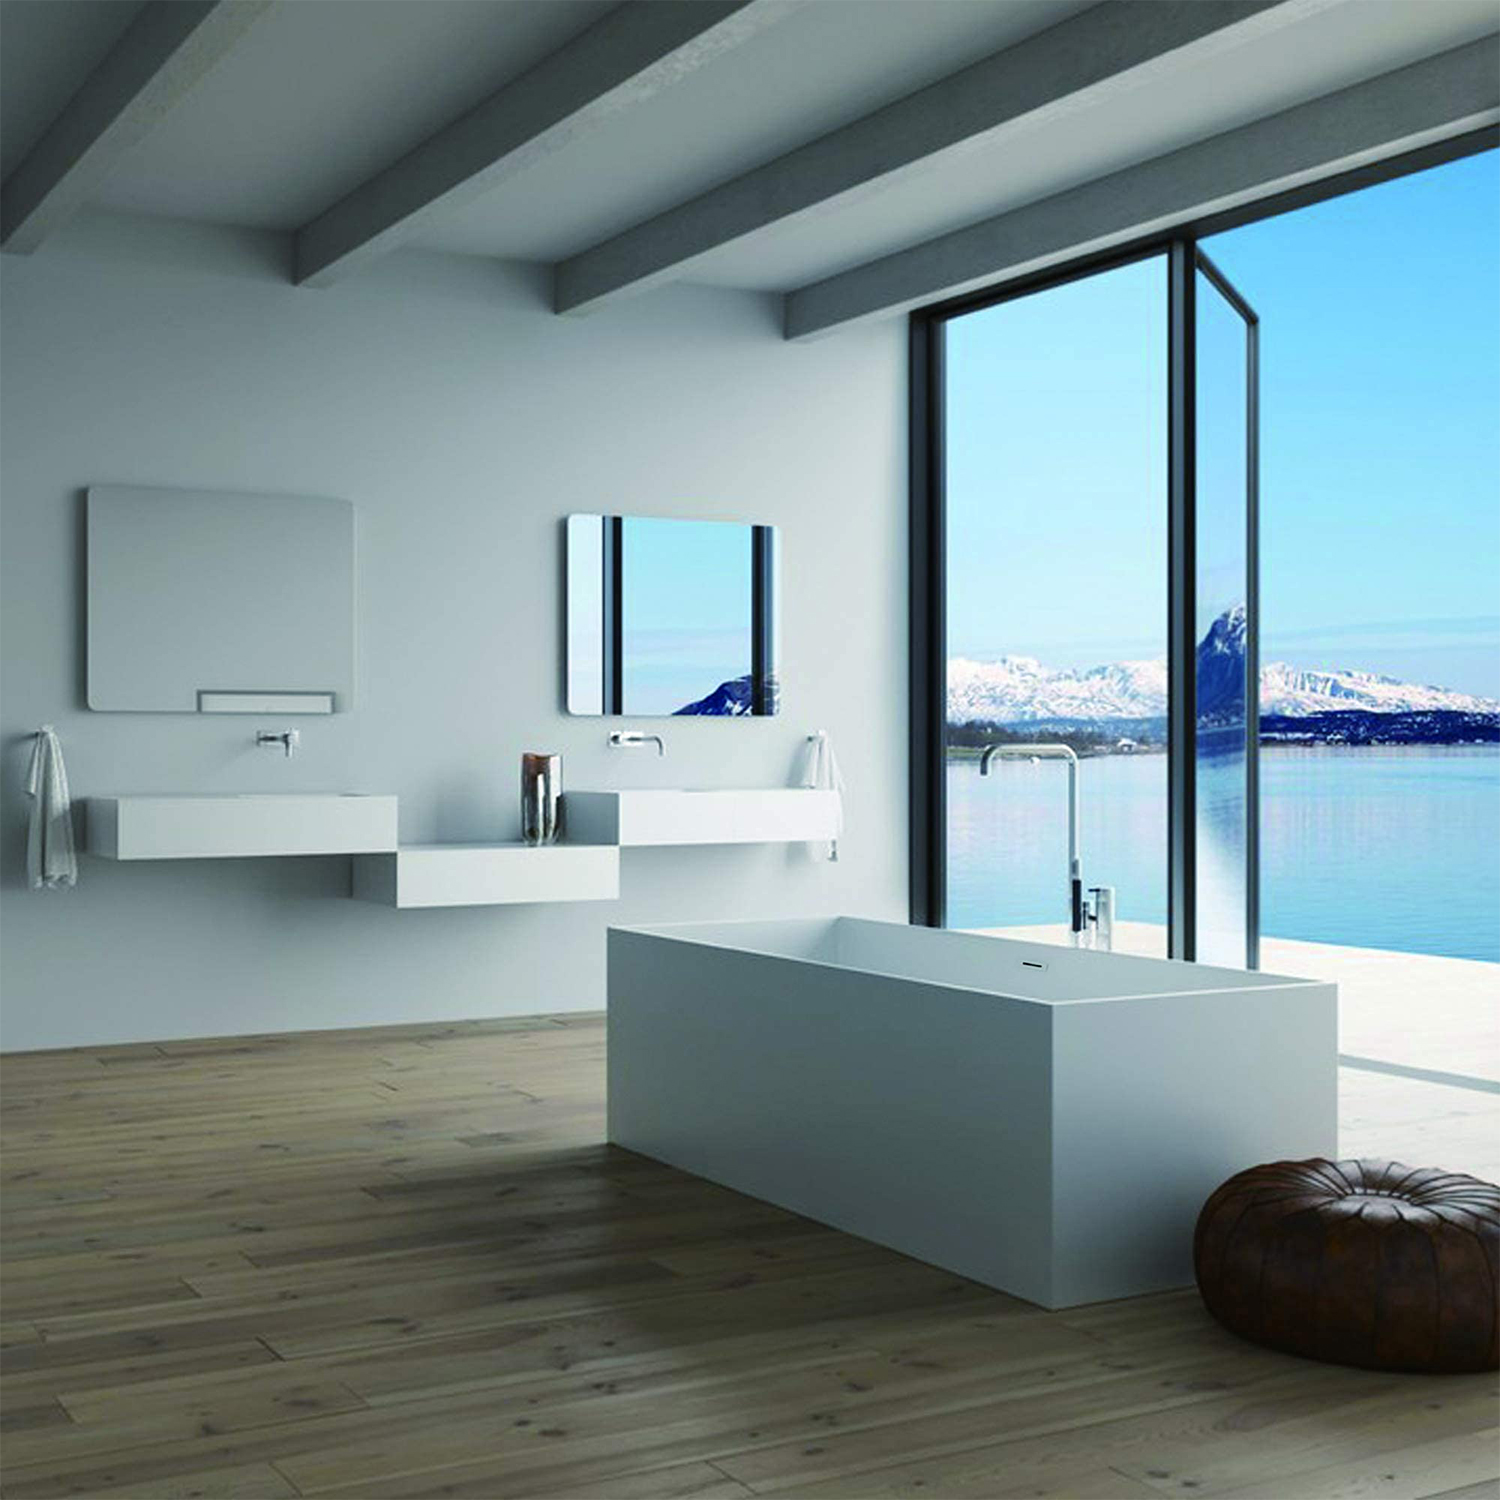 Op maat gemaakte moderne vrijstaande badkuip Noord-Amerika Luxe badkuip Wit acryl badkuip